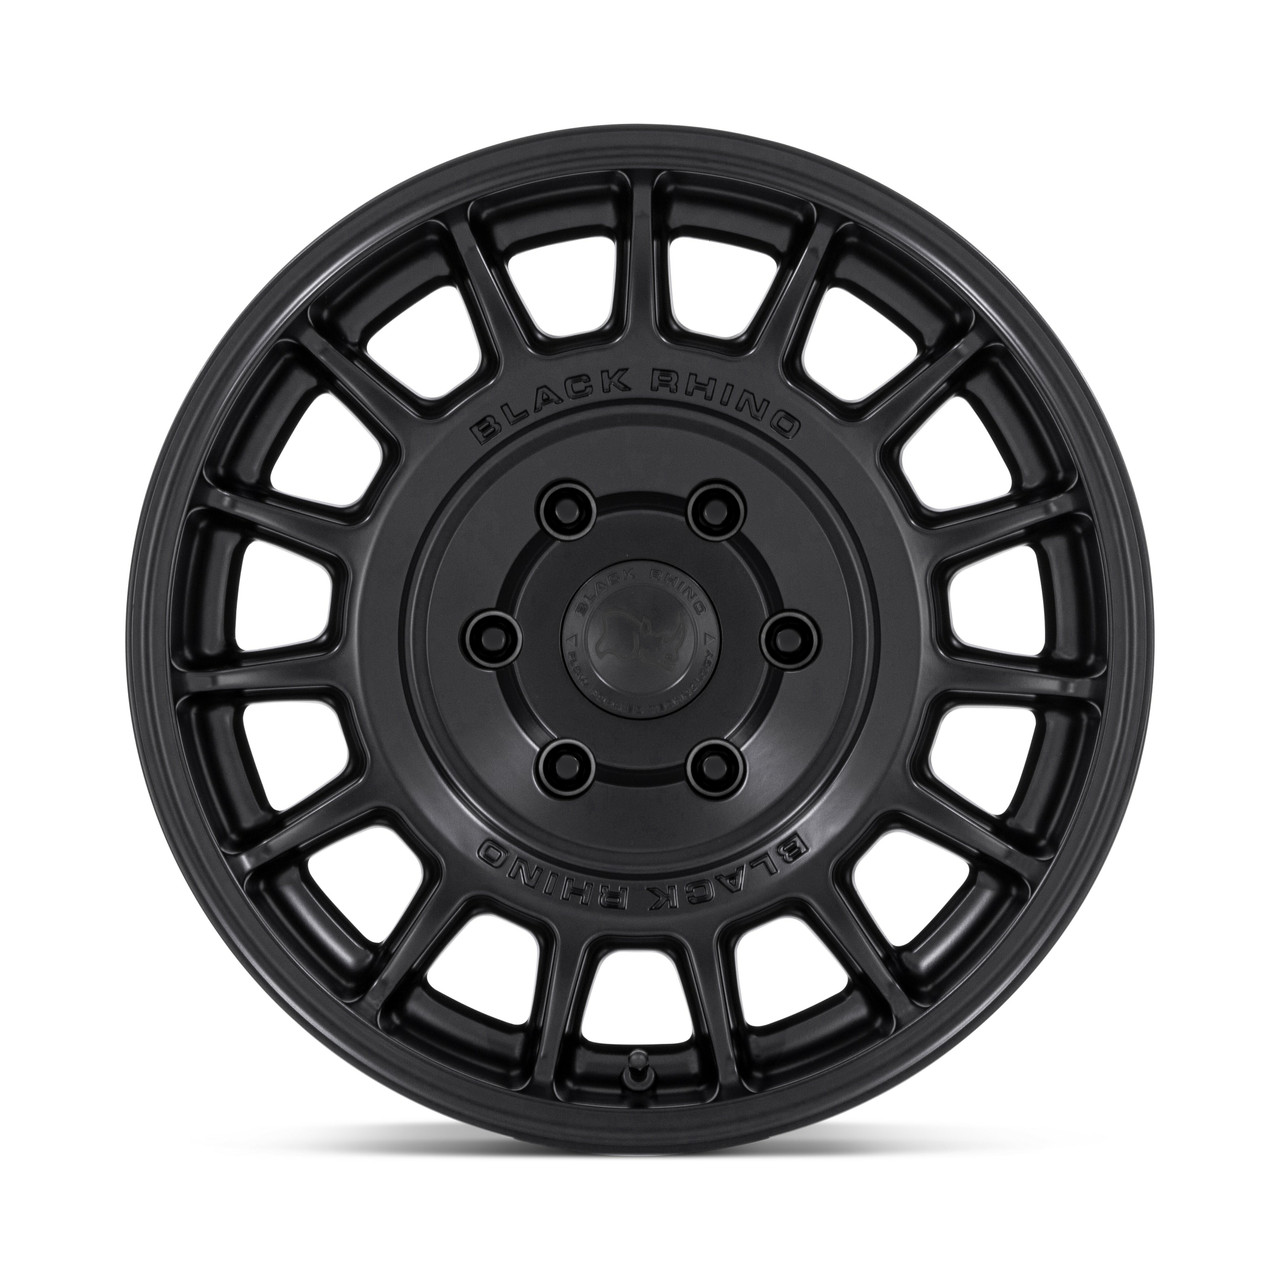 Black Rhino BR015 Voll 15x7 Matte Black Wheel 5x100 15" 15mm Rim